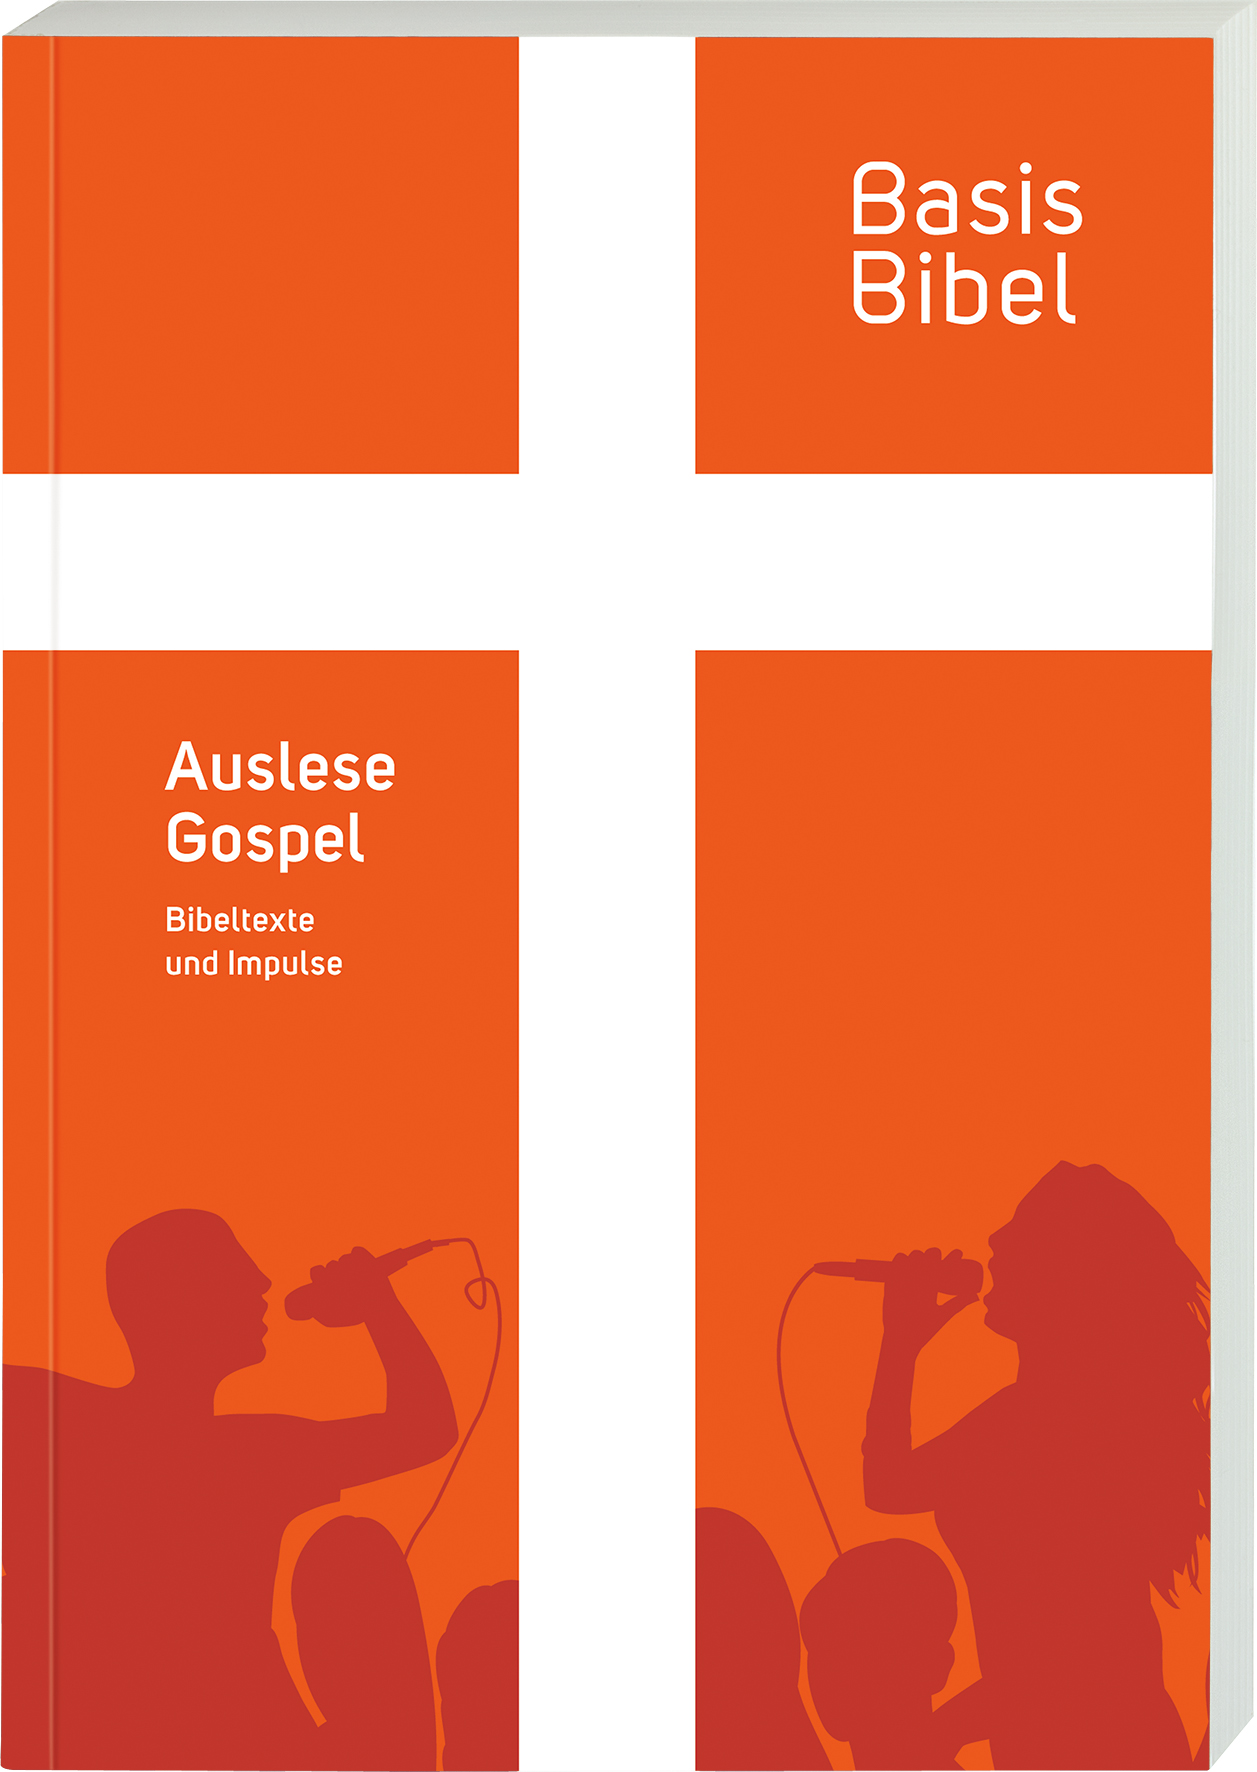 BasisBibel. Auslese Gospel - Cover